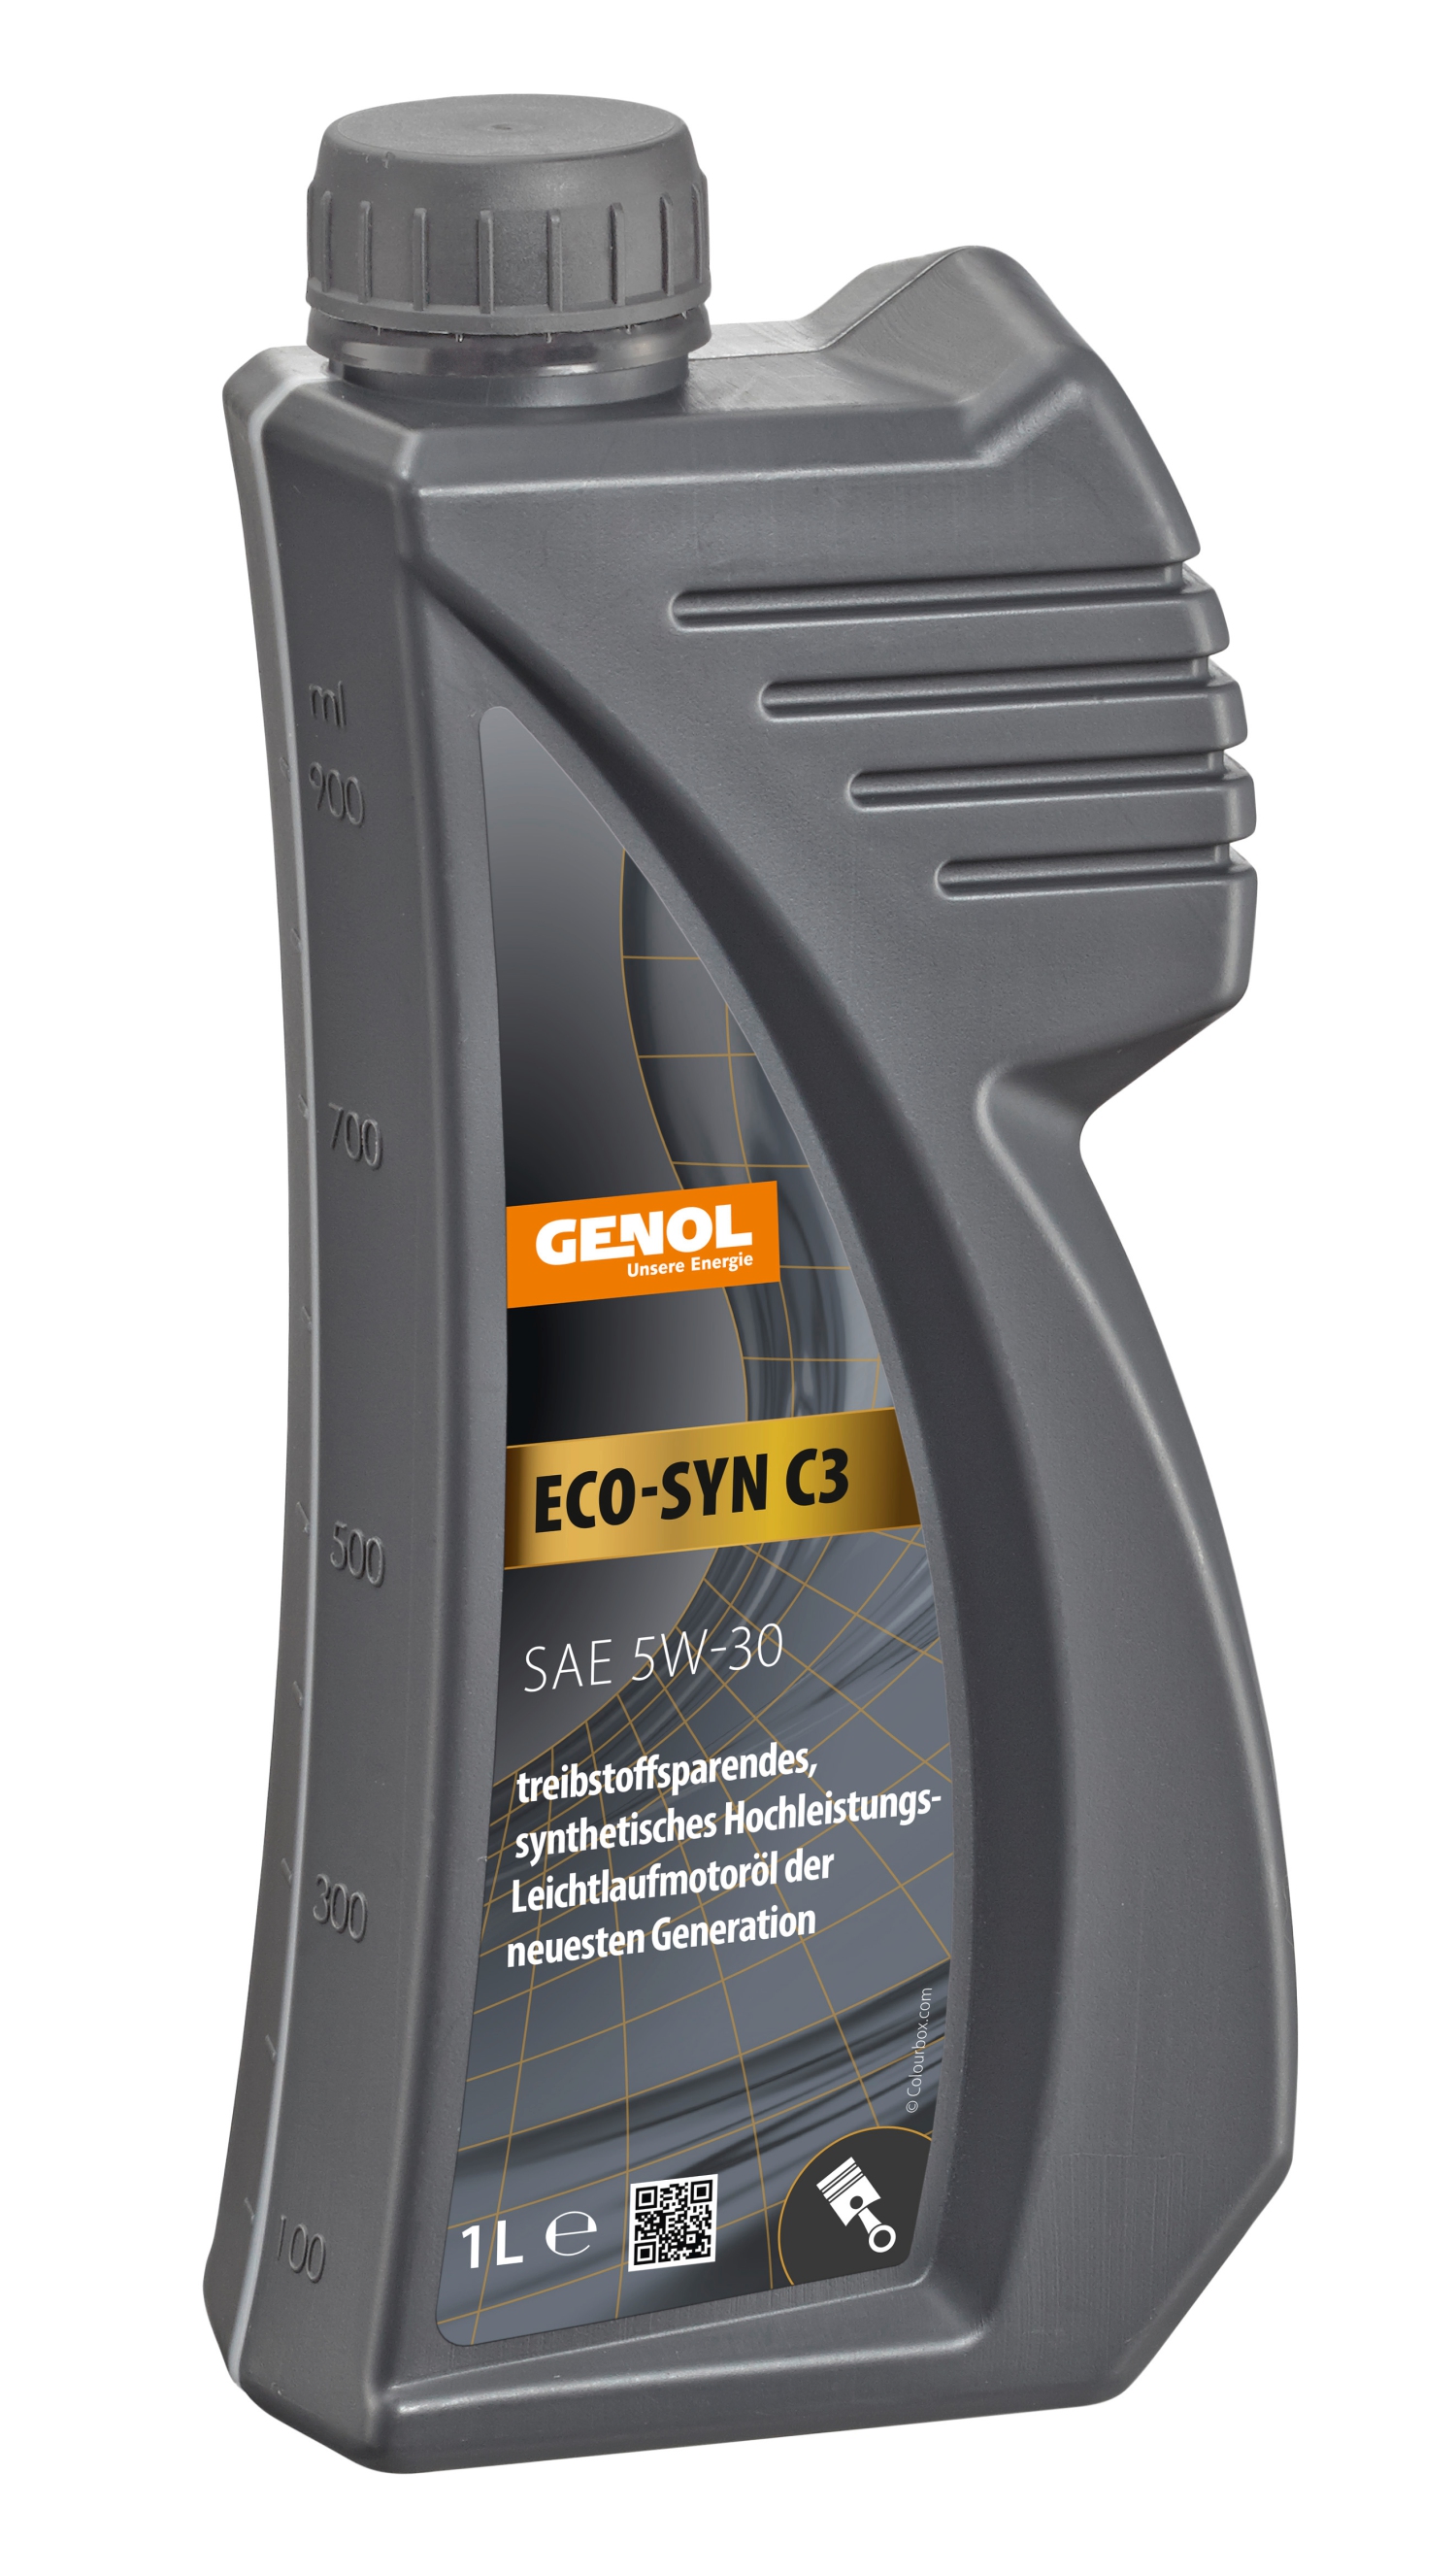 GENOL Eco-Syn C3 5W-30, Motoröl